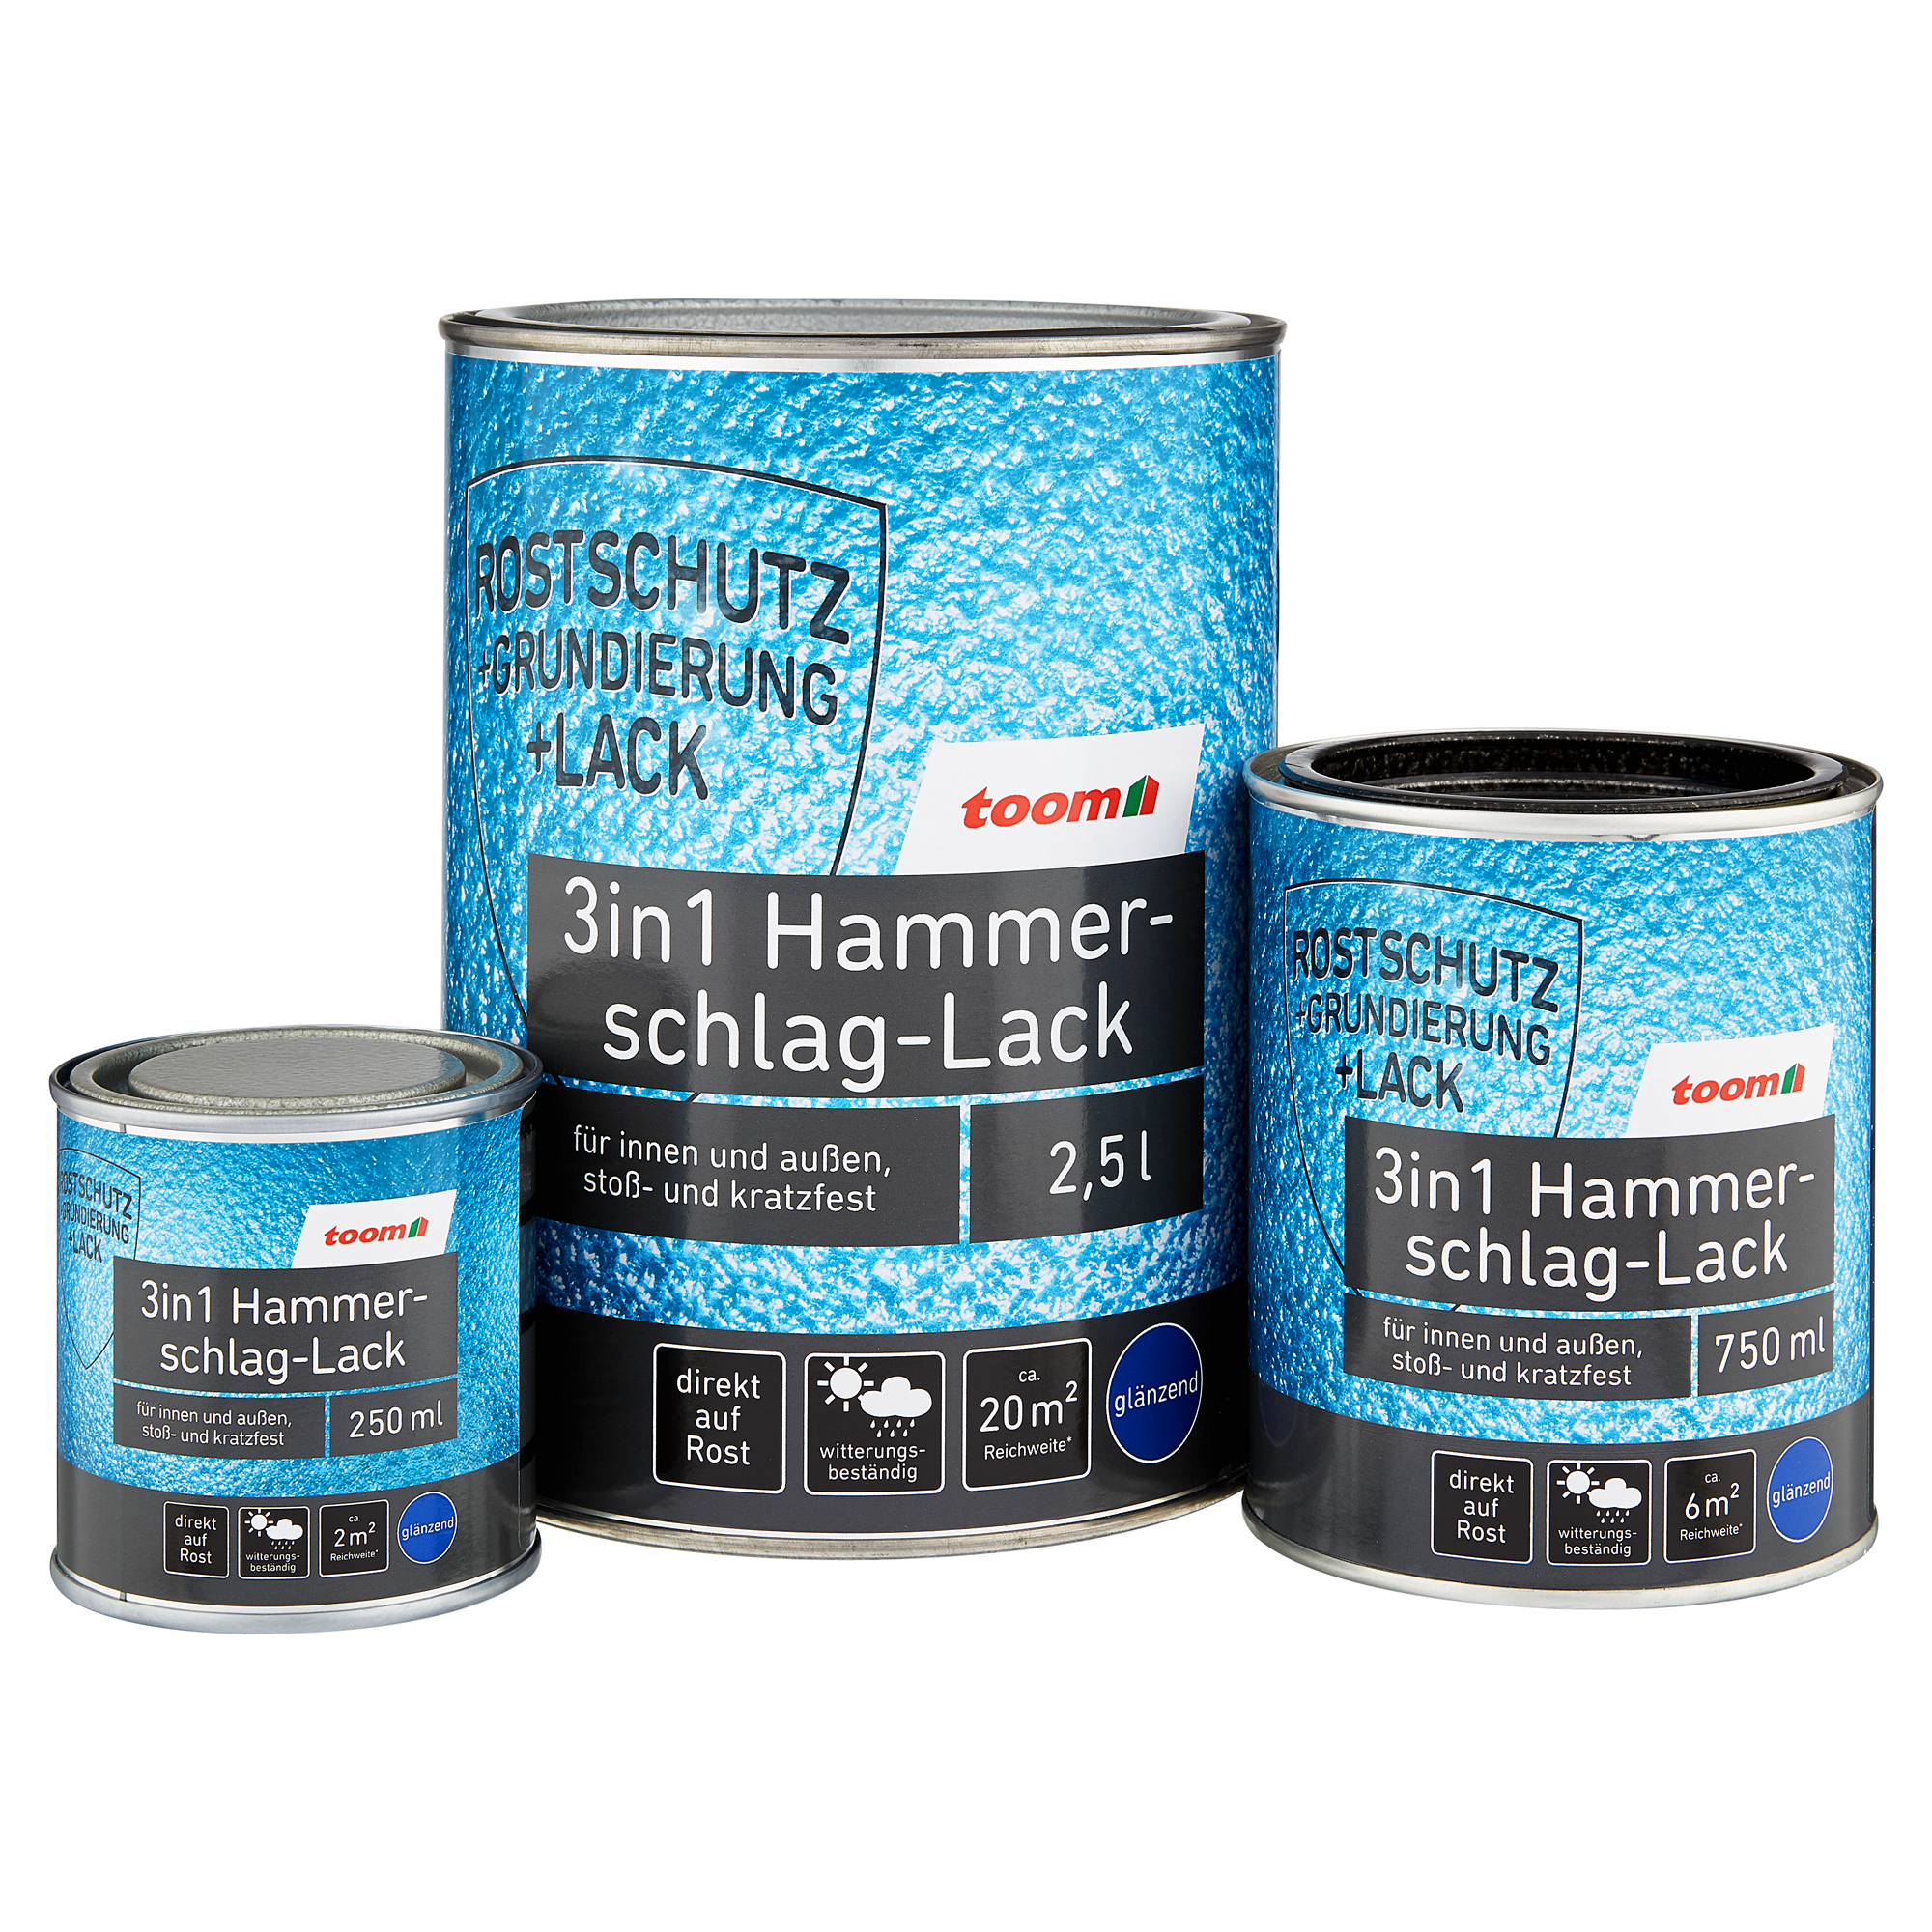 3in1 Hammerschlag-Lack kupferfarben glänzend 250 ml + product picture